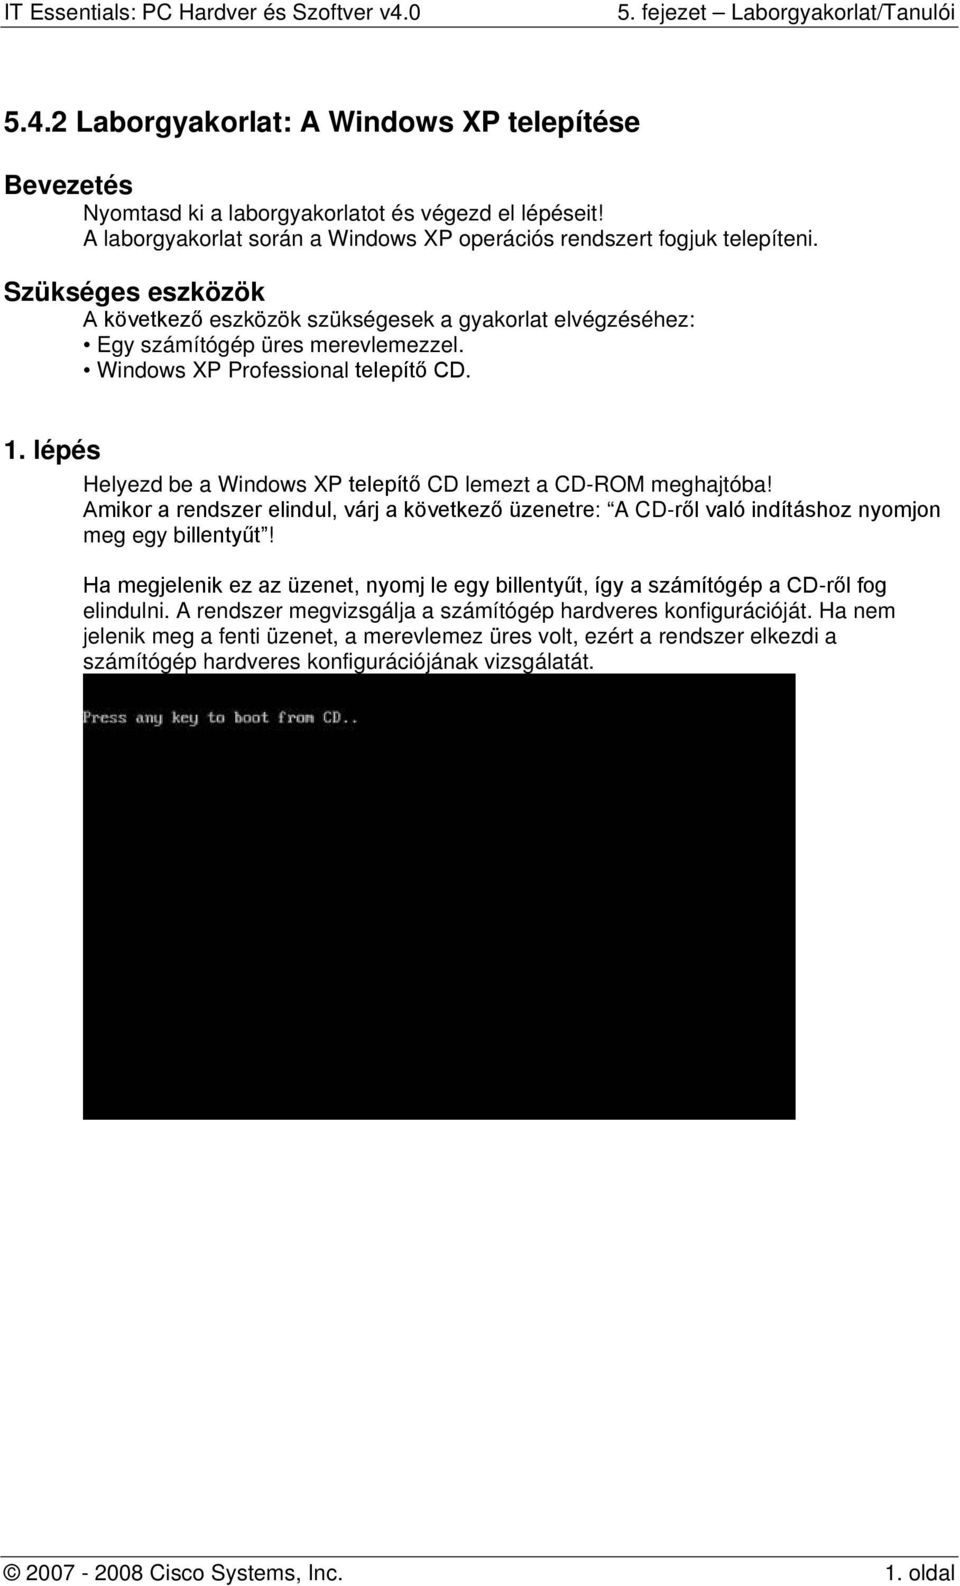 5.4.2 Laborgyakorlat: A Windows XP telepítése - PDF Ingyenes letöltés